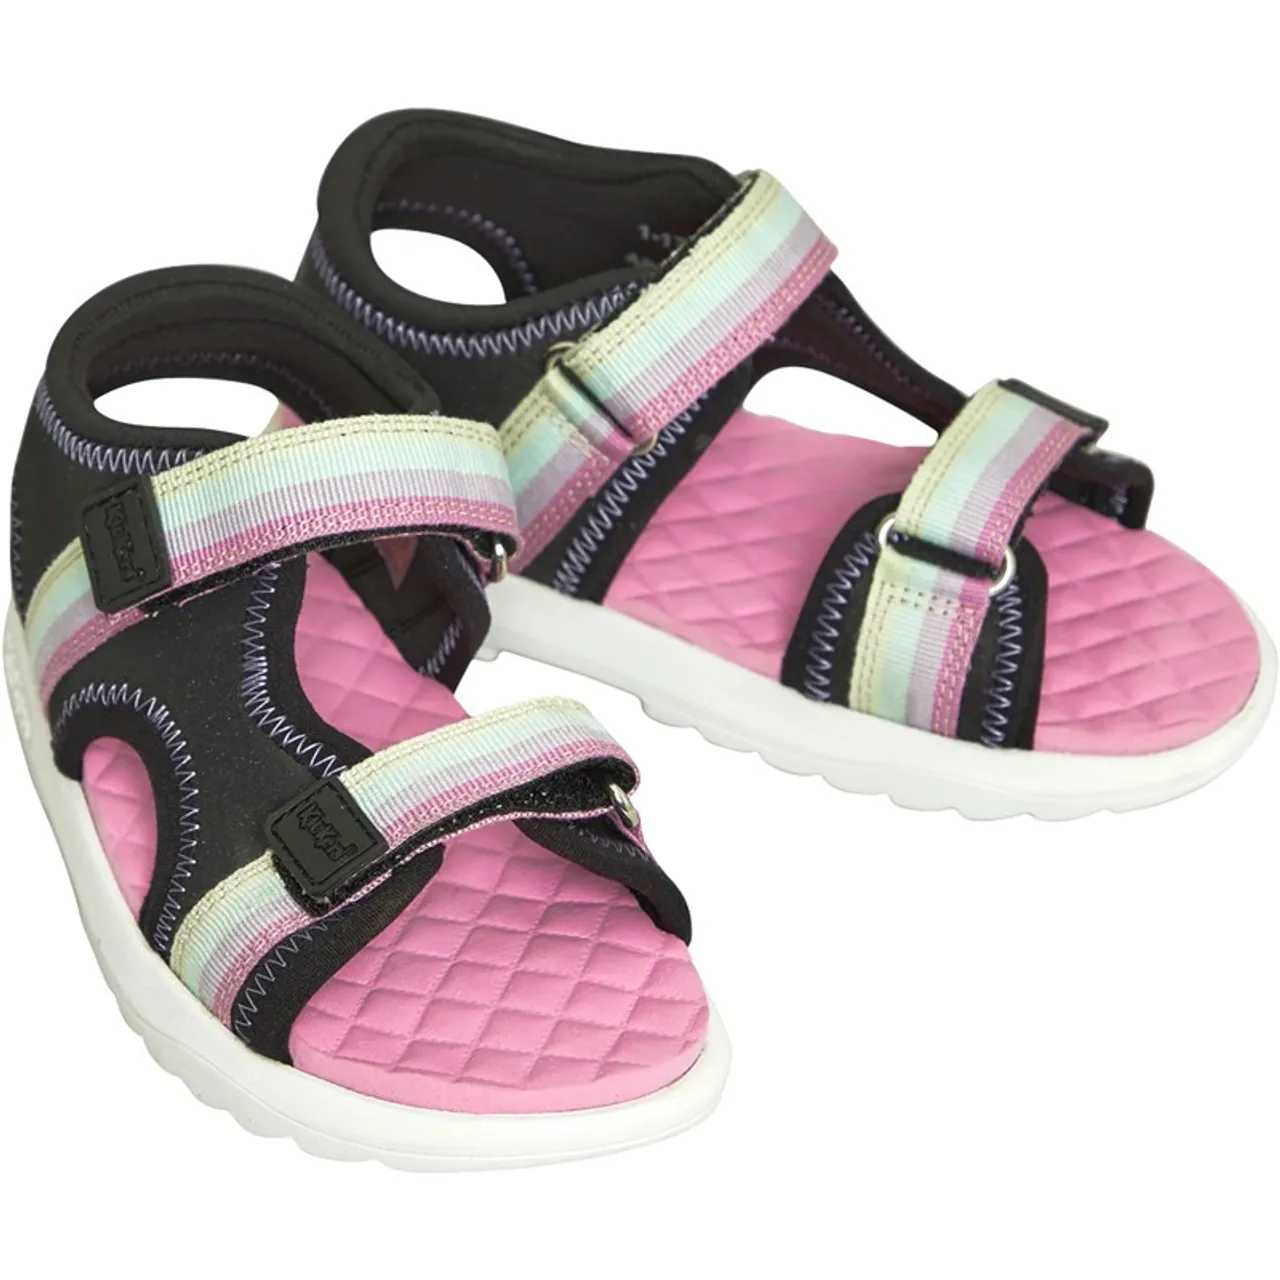 Kickers Infant Girls Kickster Sandals Multi